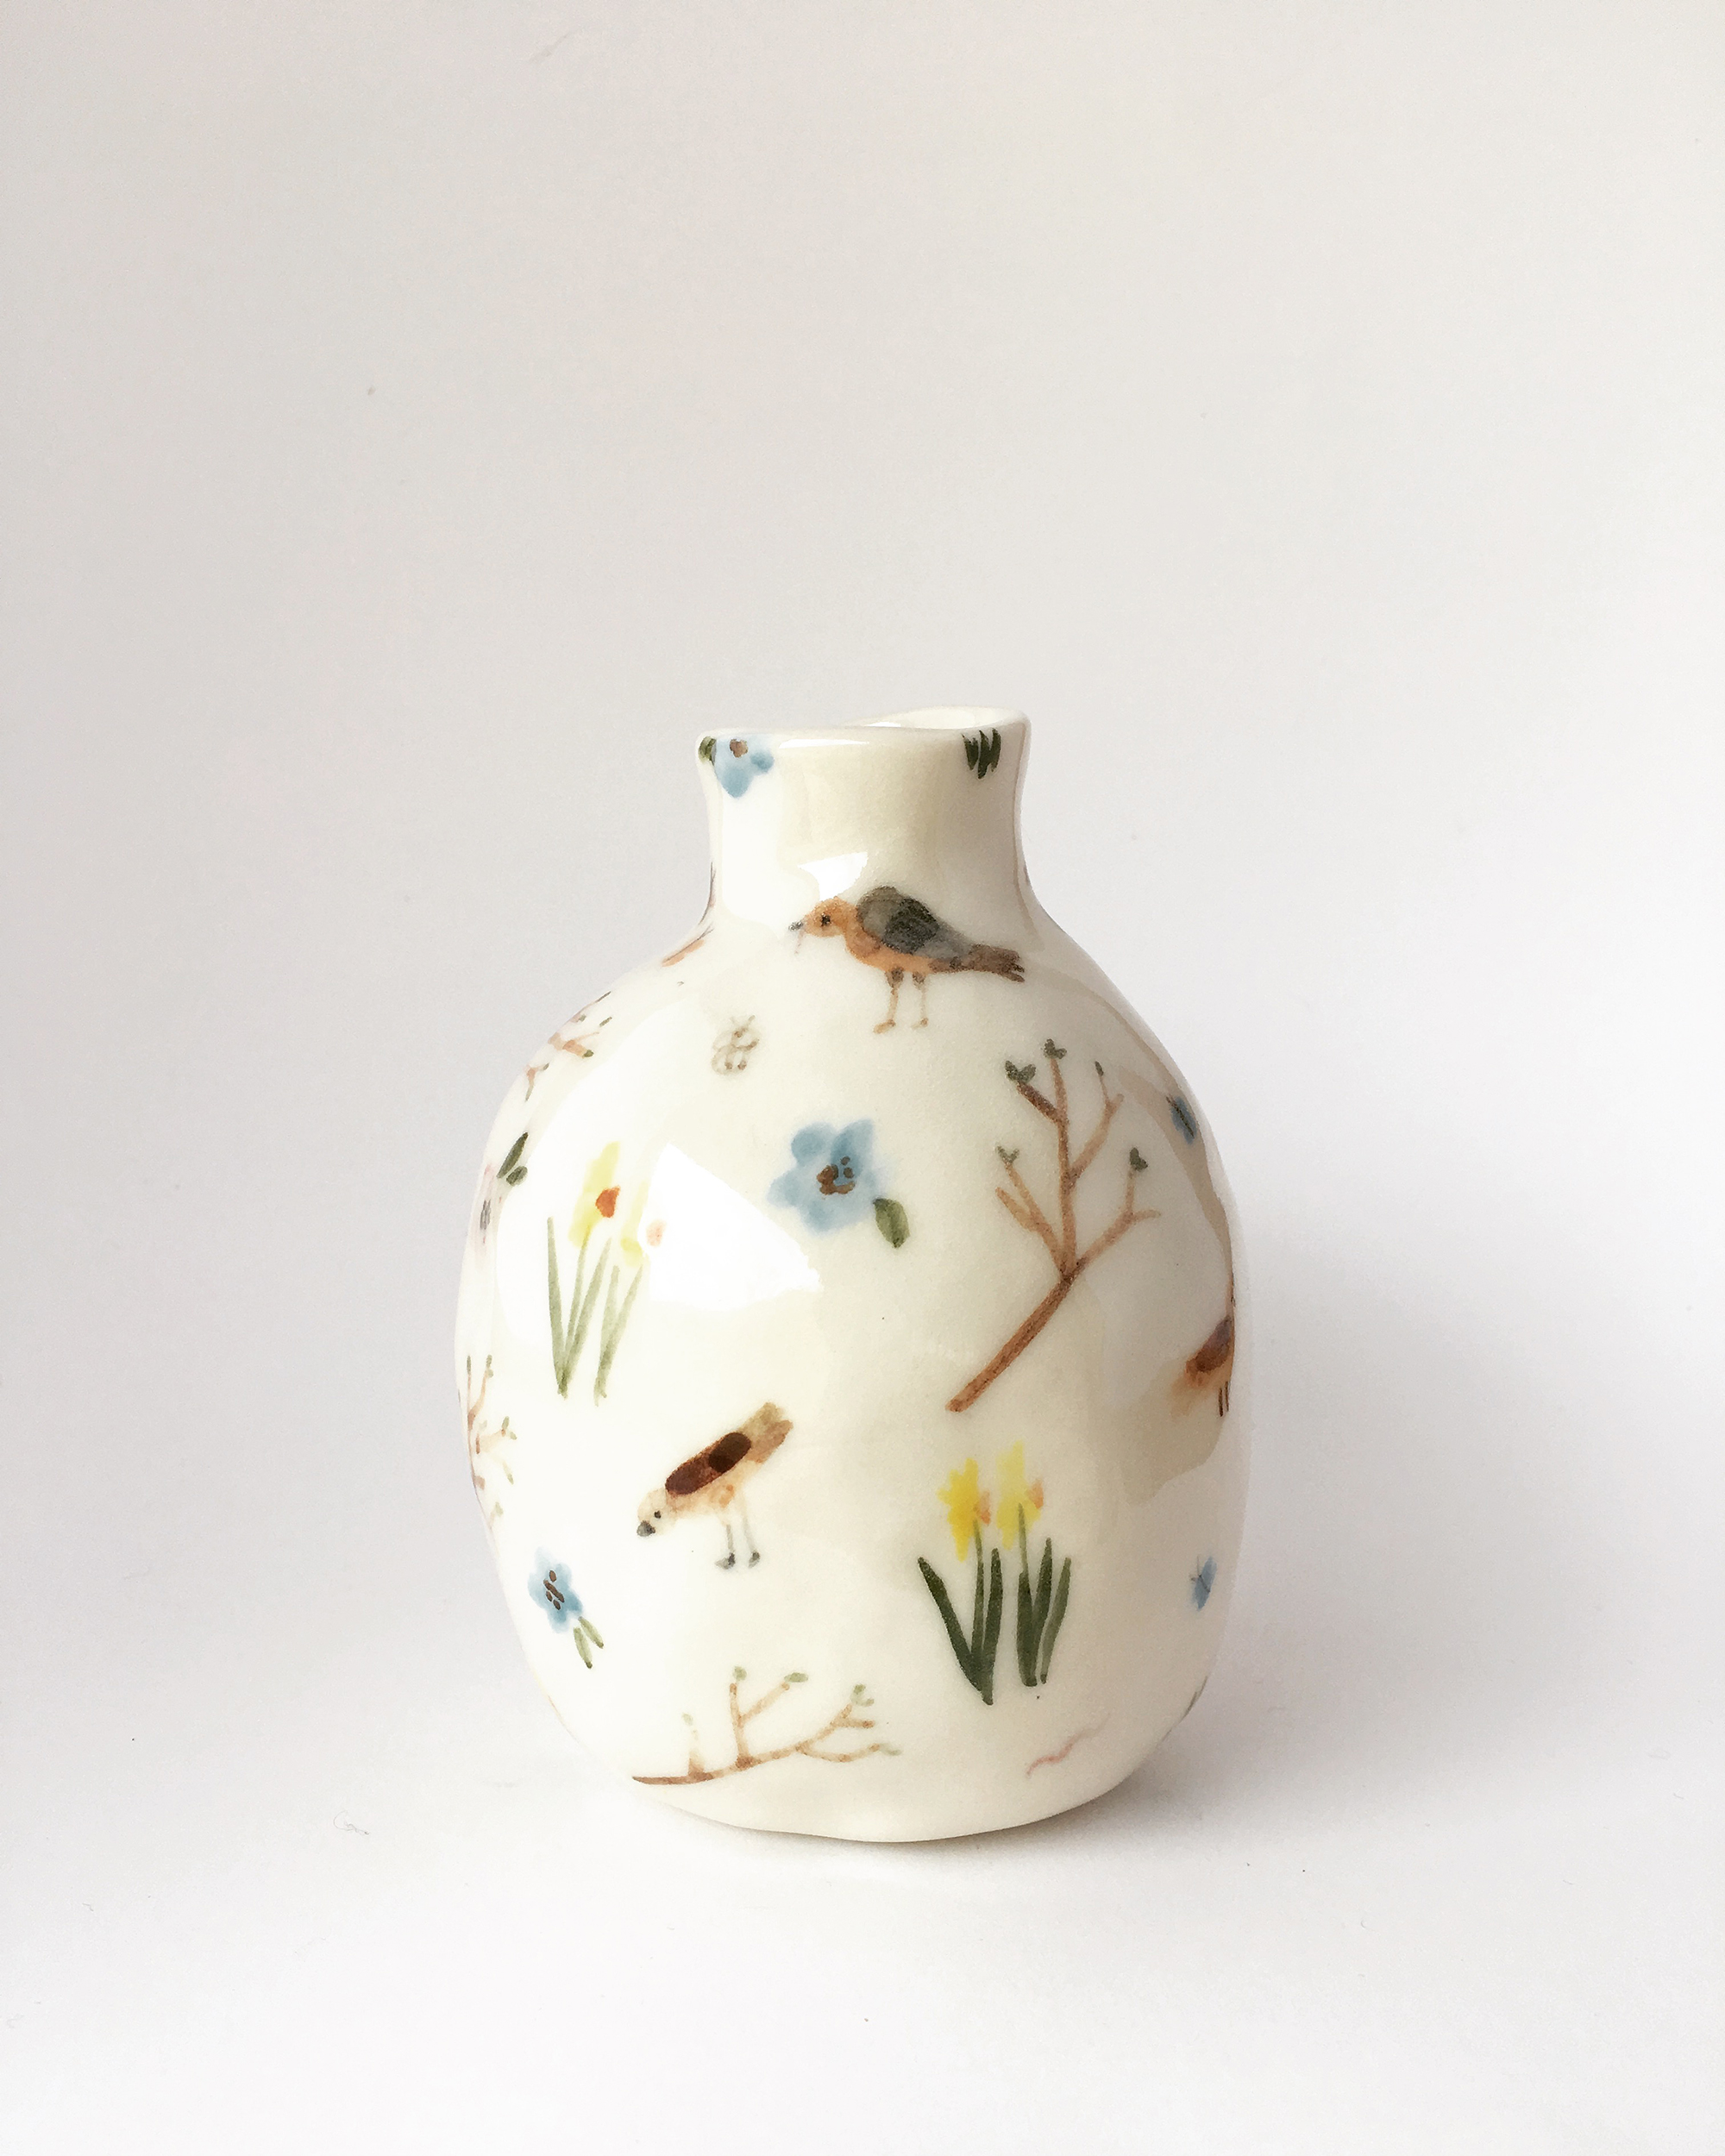 Ceramic vase by Vivien Mildenberger